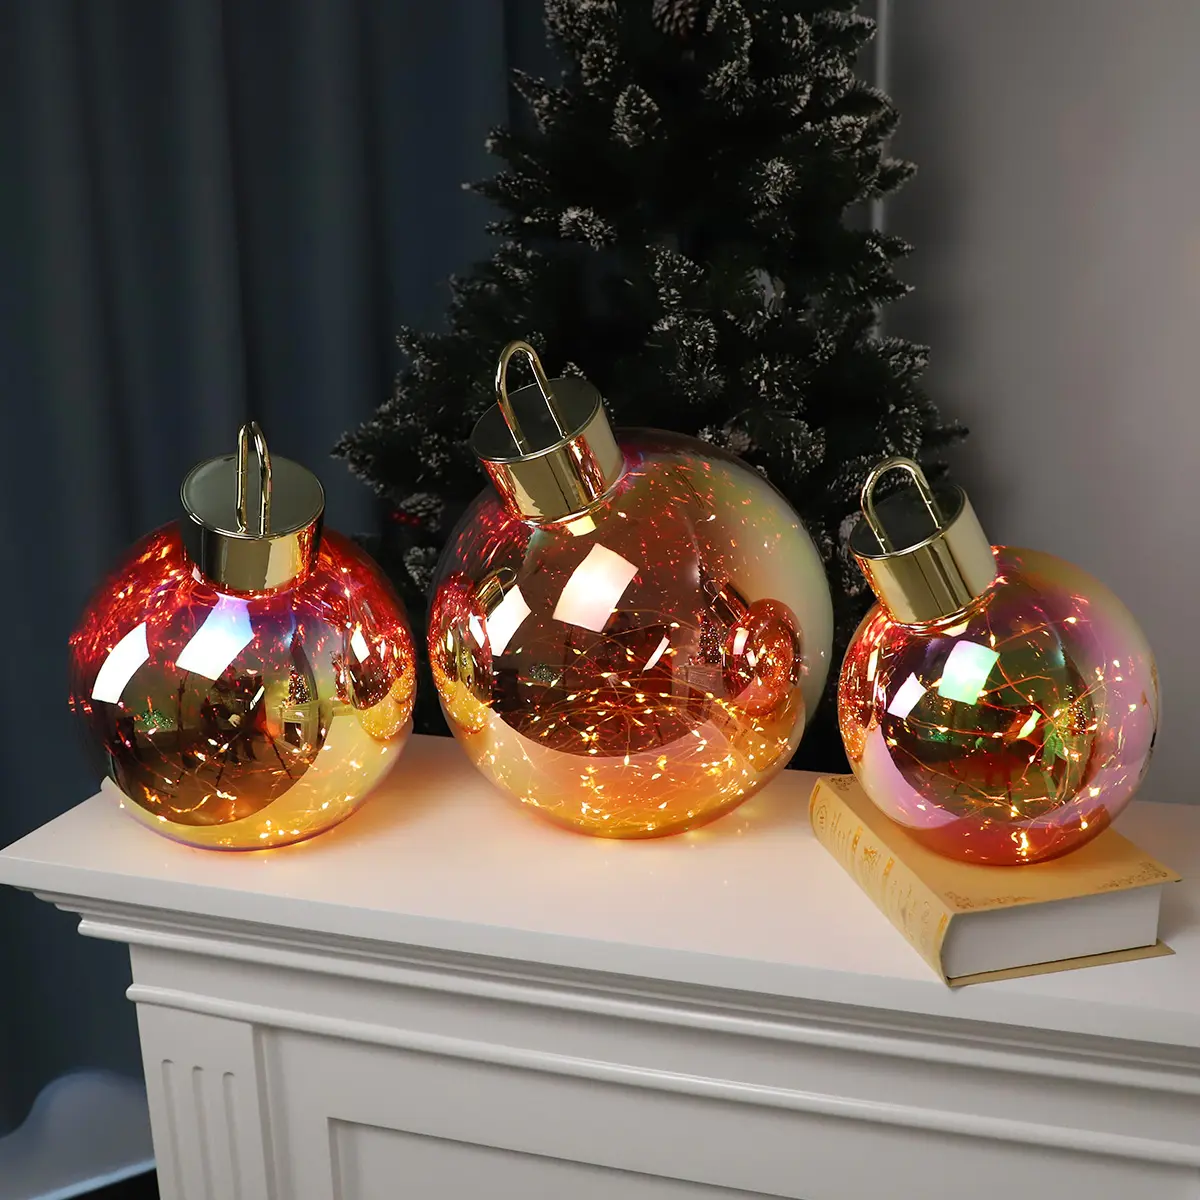 كرات زينة زجاجية كبيرة محلية الصنع للكريسماس صناعة غربية بسعر الجملة ، كرات زينة مضاءة بأضواء داخلية